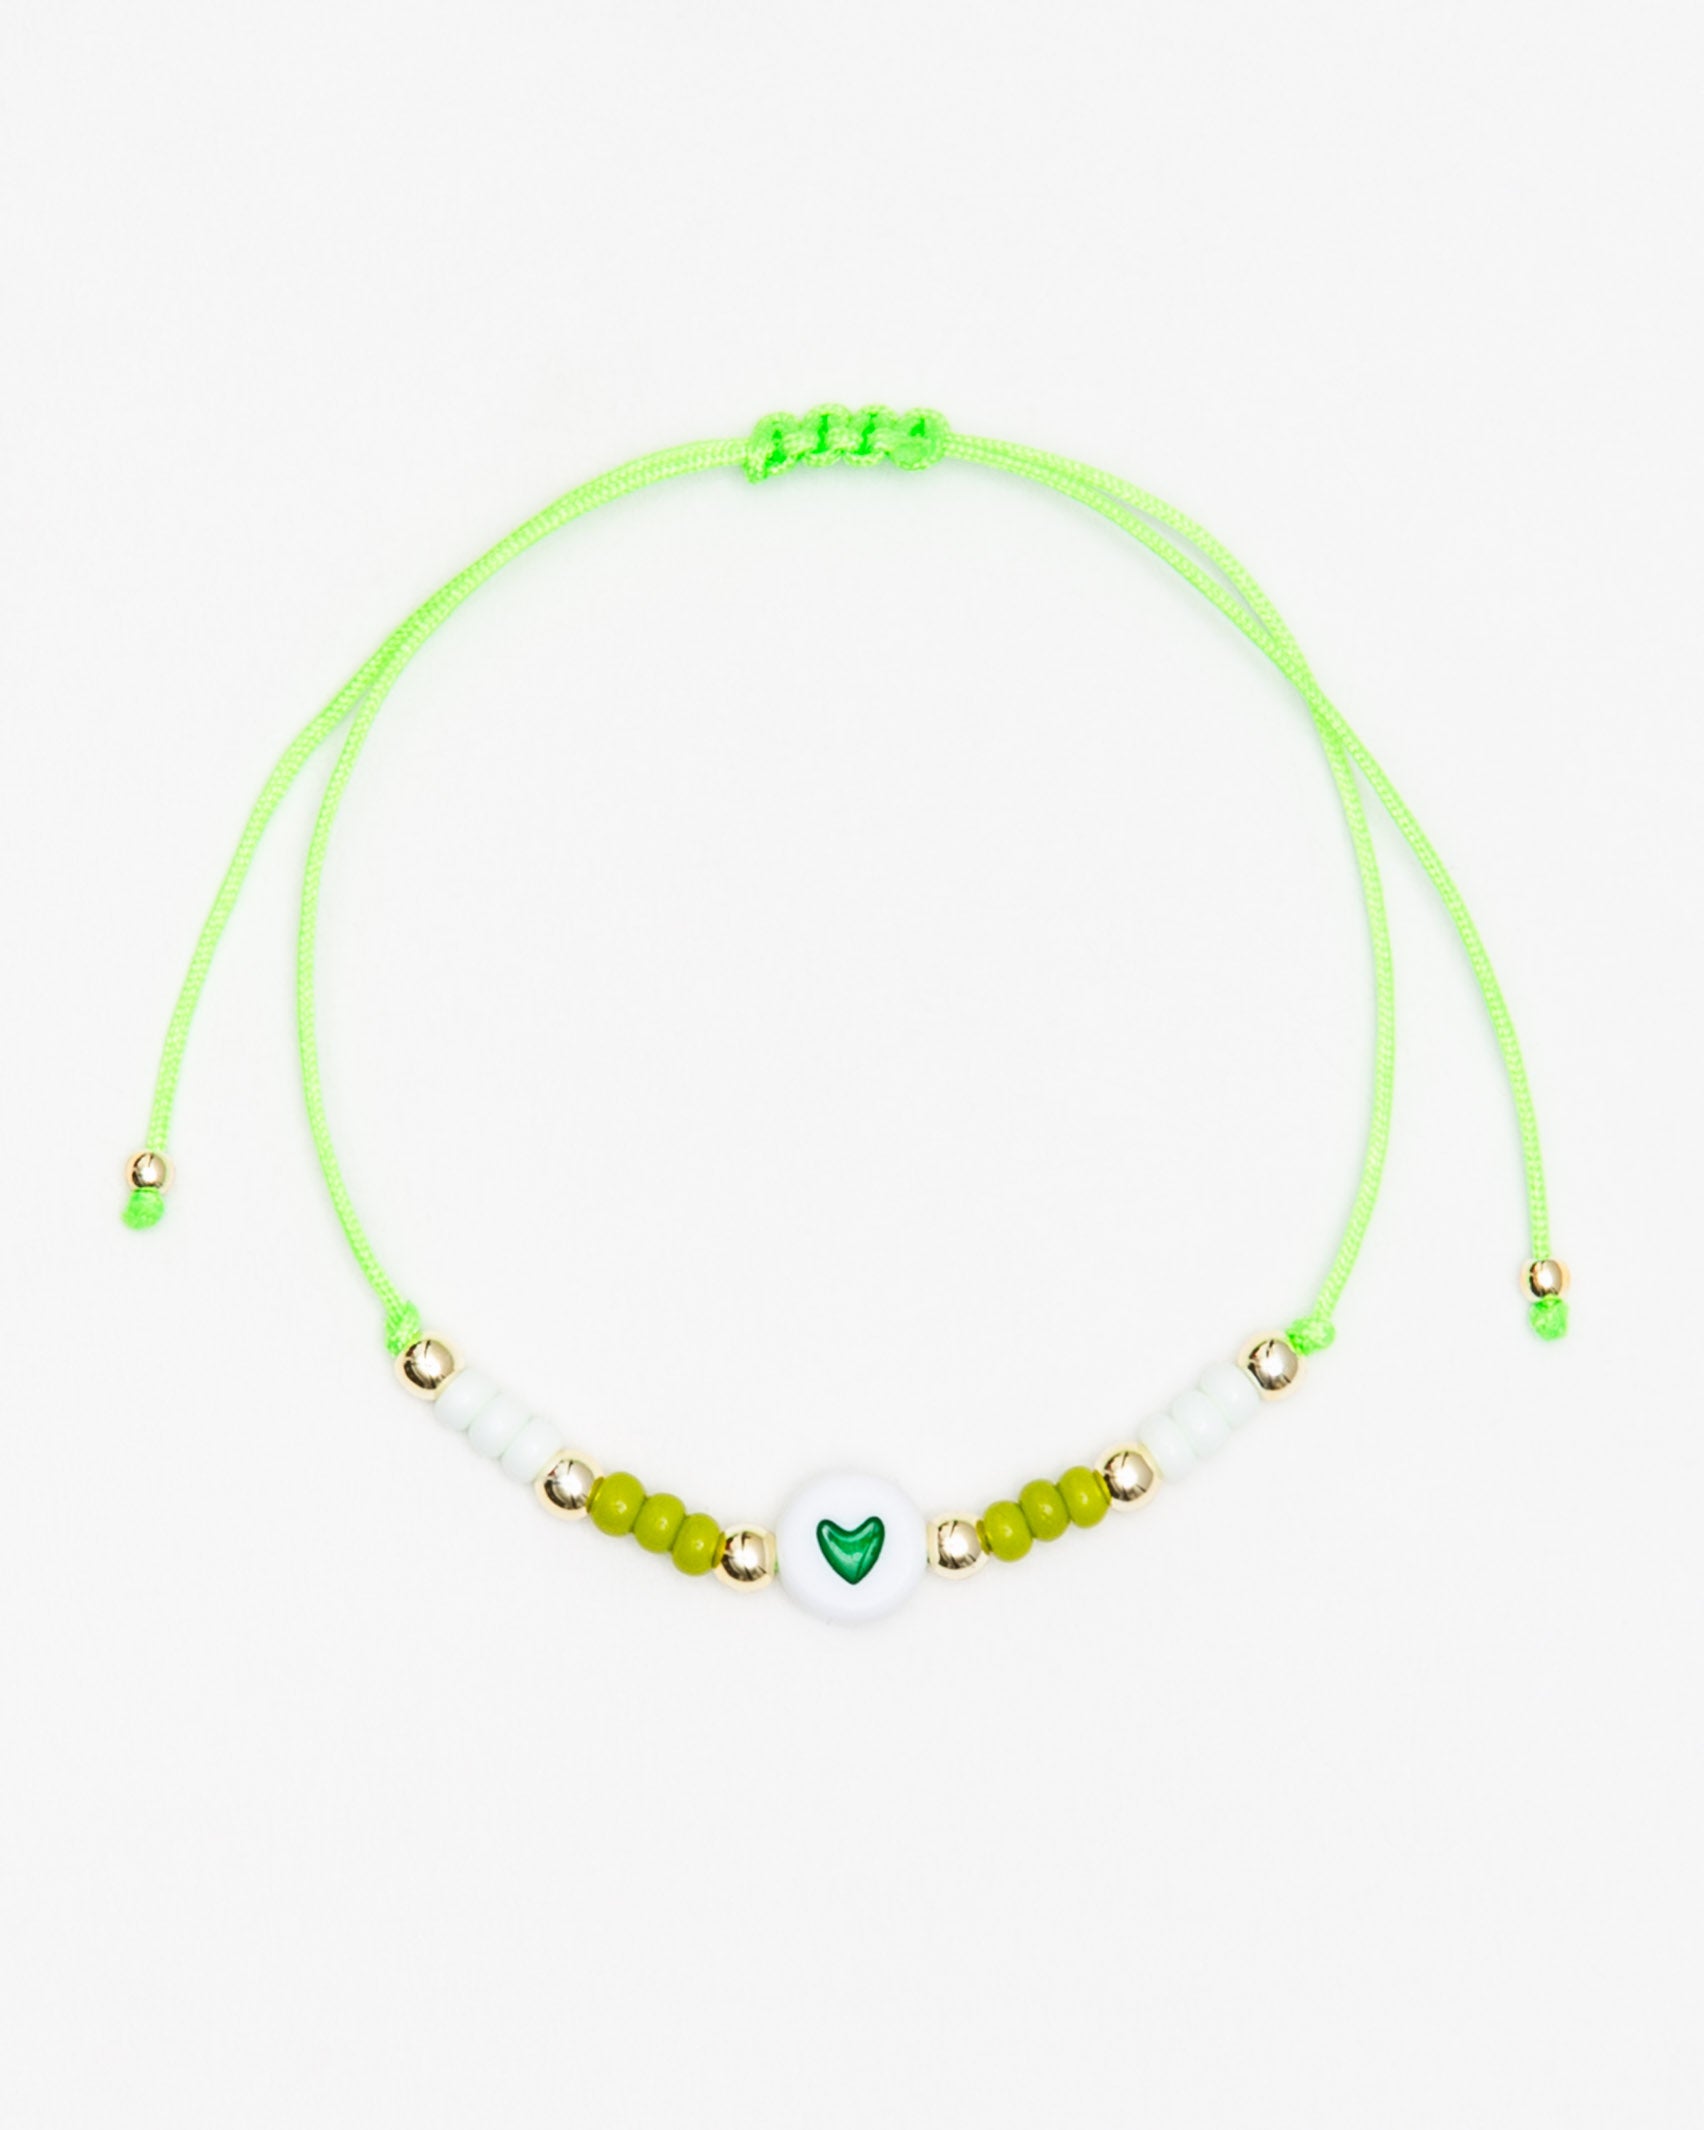 Feines Armband mit Herzchen - Broke + Schön#farbe_green